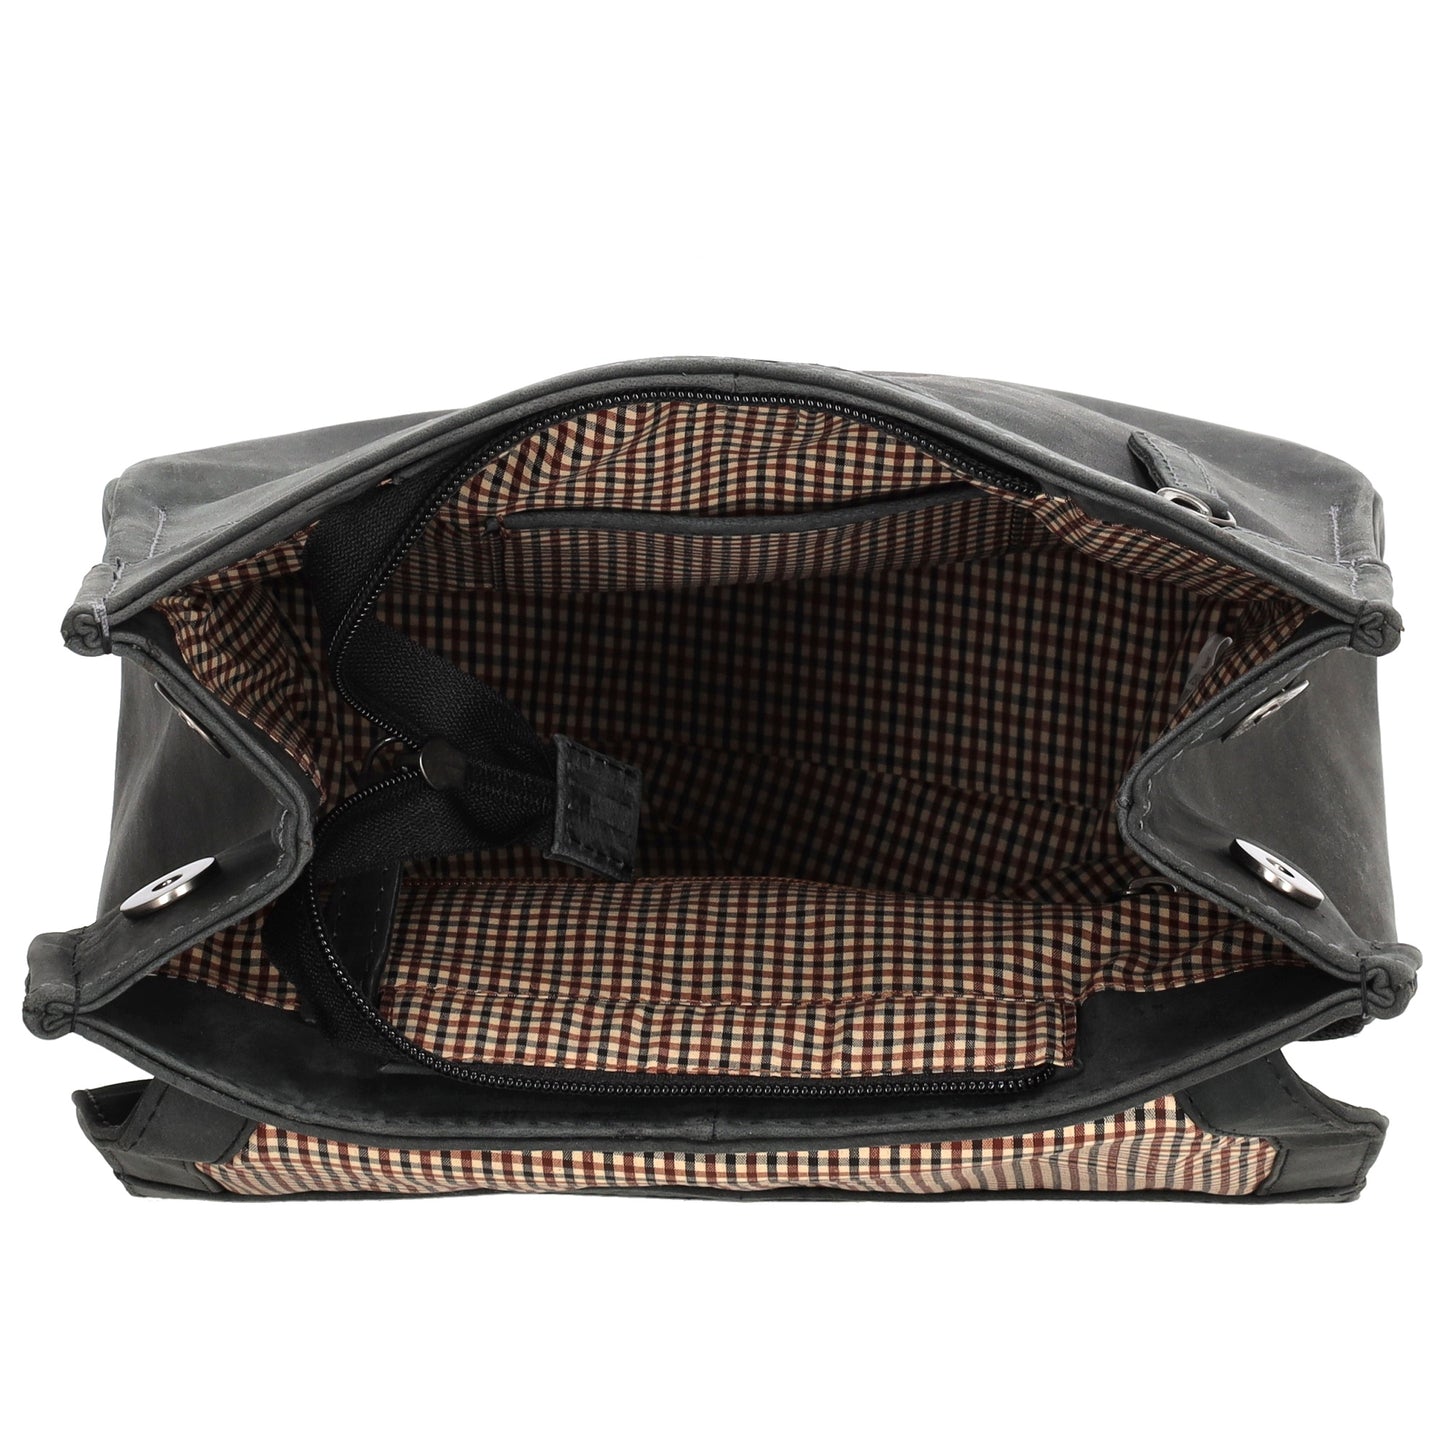 Rucksack 25,5x 23,5cm in Schwarz mit Überschlag und Magnetverschluss aus Leder